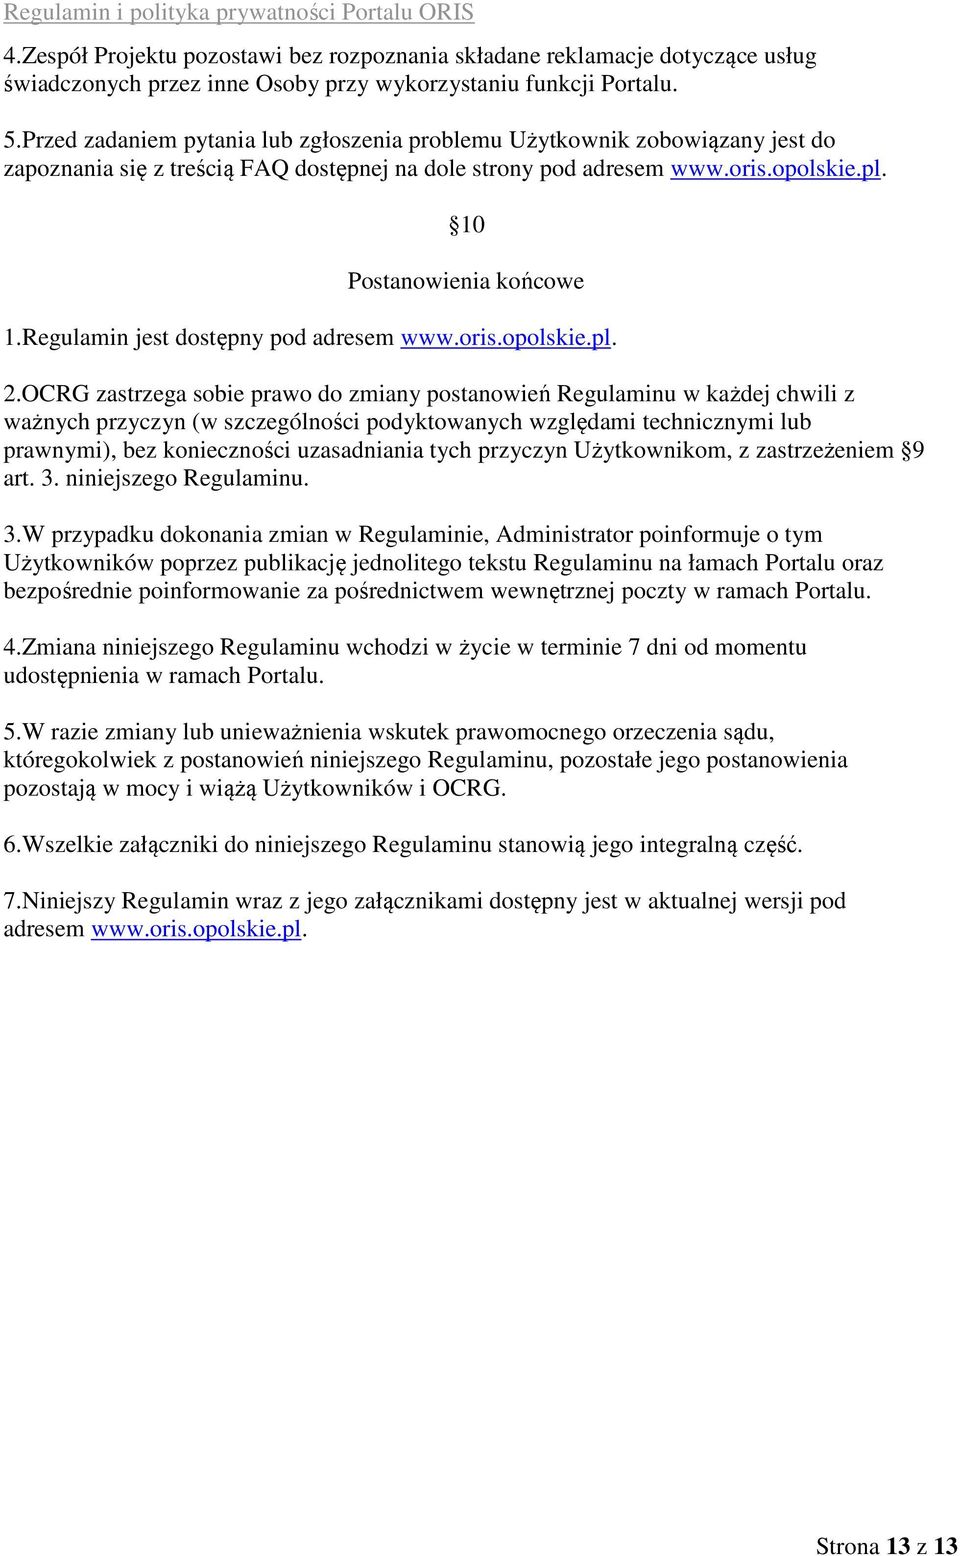 Regulamin jest dostępny pod adresem www.oris.opolskie.pl. 2.